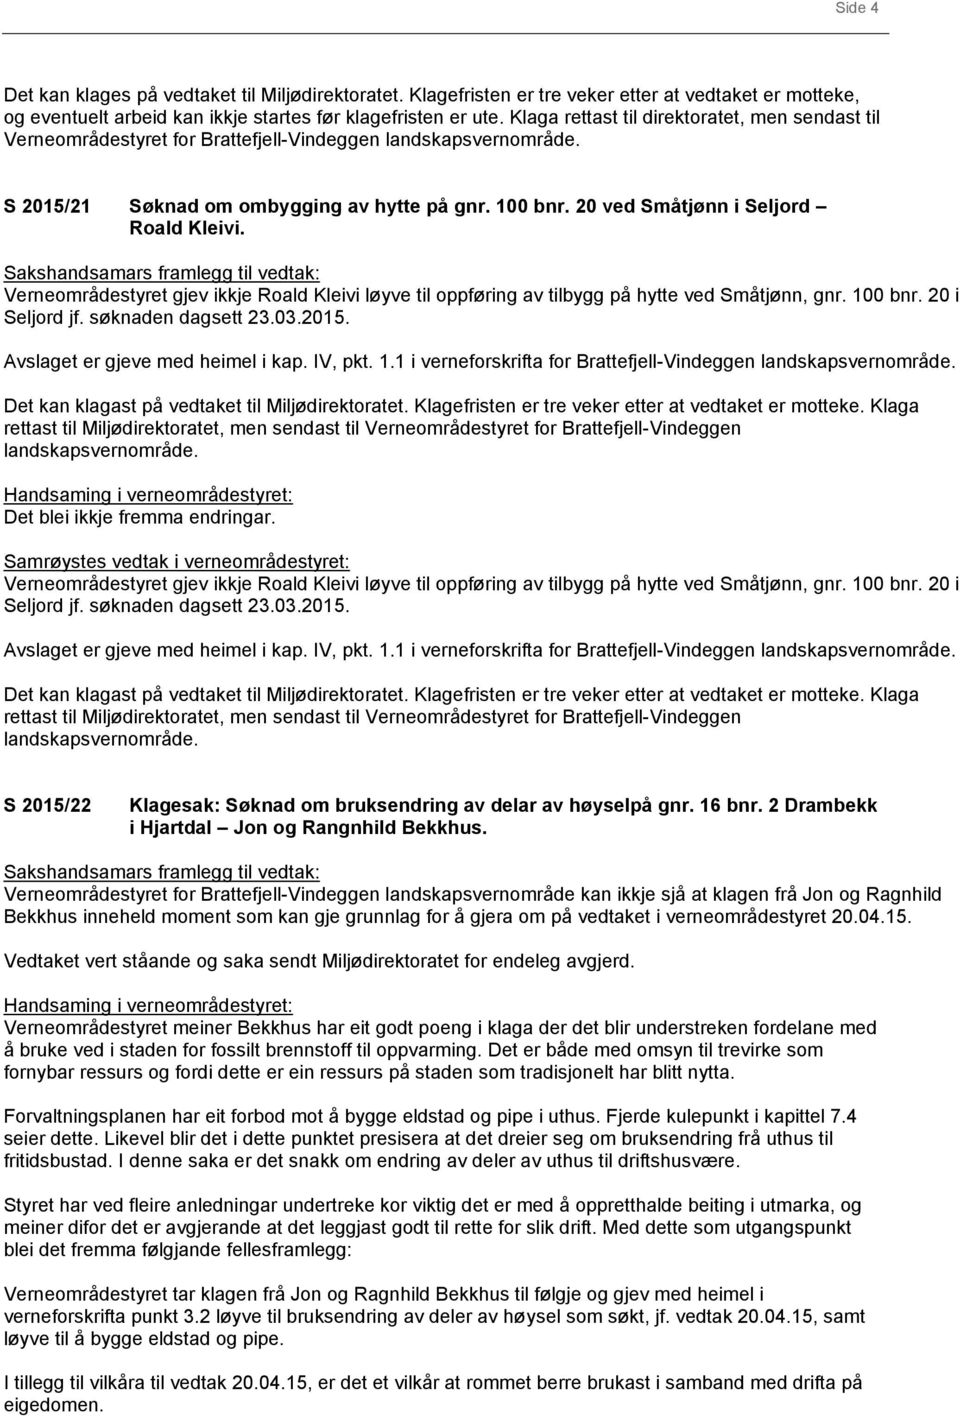 Verneområdestyret gjev ikkje Roald Kleivi løyve til oppføring av tilbygg på hytte ved Småtjønn, gnr. 100 bnr. 20 i Seljord jf. søknaden dagsett 23.03.2015. Avslaget er gjeve med heimel i kap. IV, pkt.